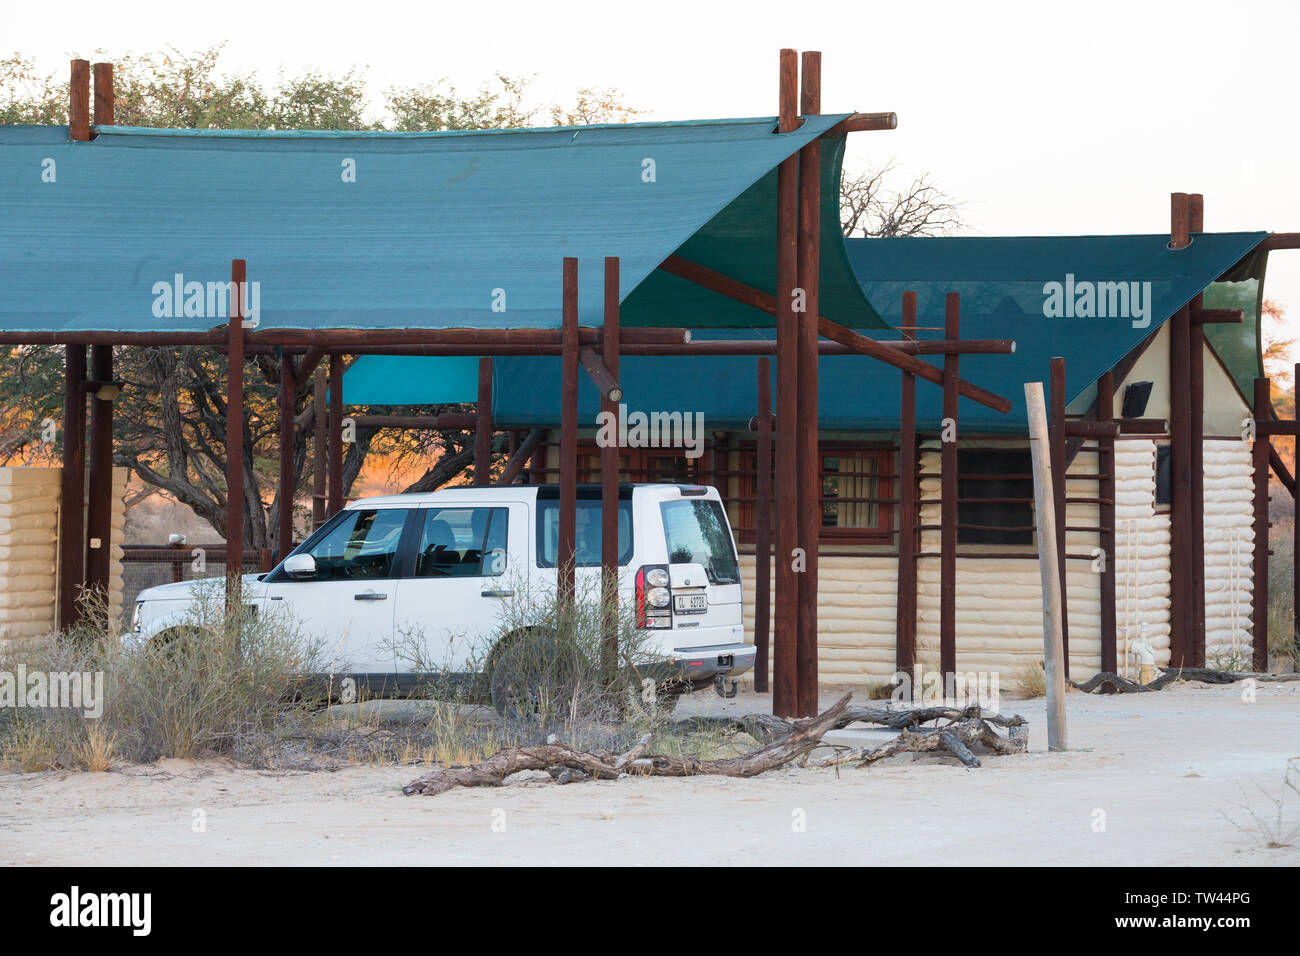 Einfache Unterkunft Chalets oder Hütten von Groot Kolk Wildnis Camp, Kgalagadi Transfrontier Park in Südafrika mit einem weißen 4x4 off road Auto geparkt Stockfoto